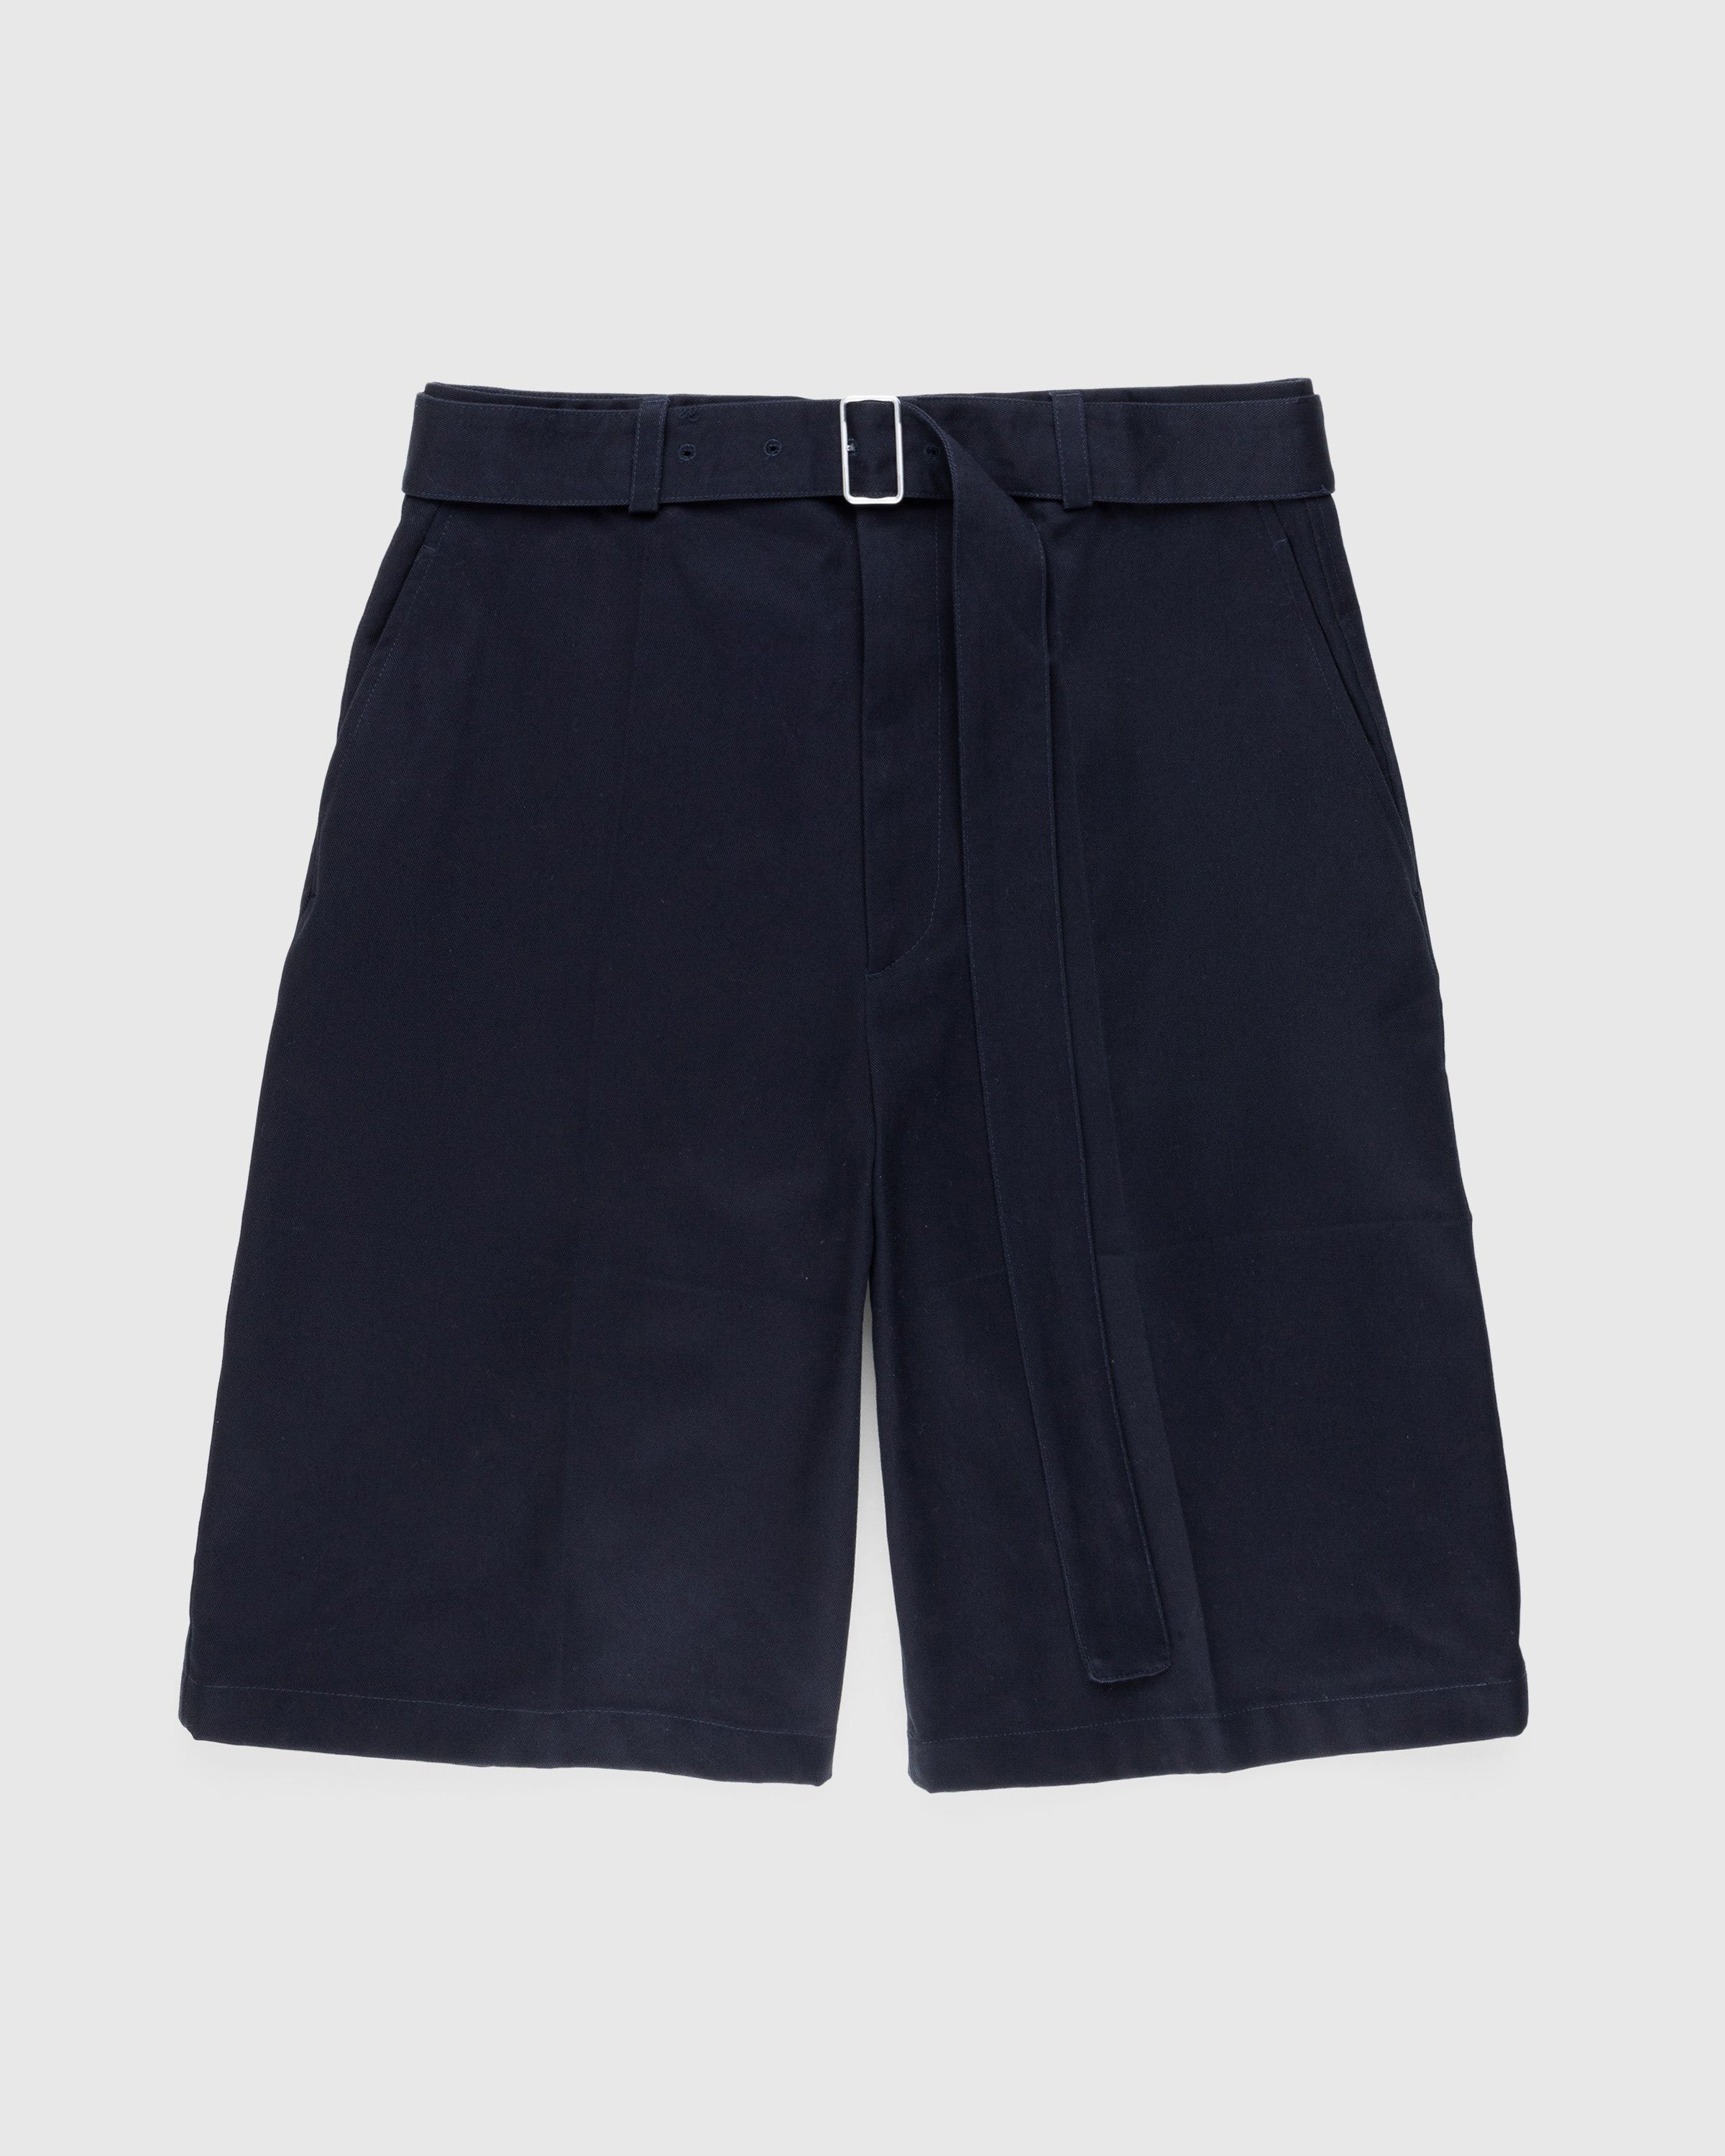 Jil Sander - Belted Shorts Navy - Clothing - Blue - Image 1